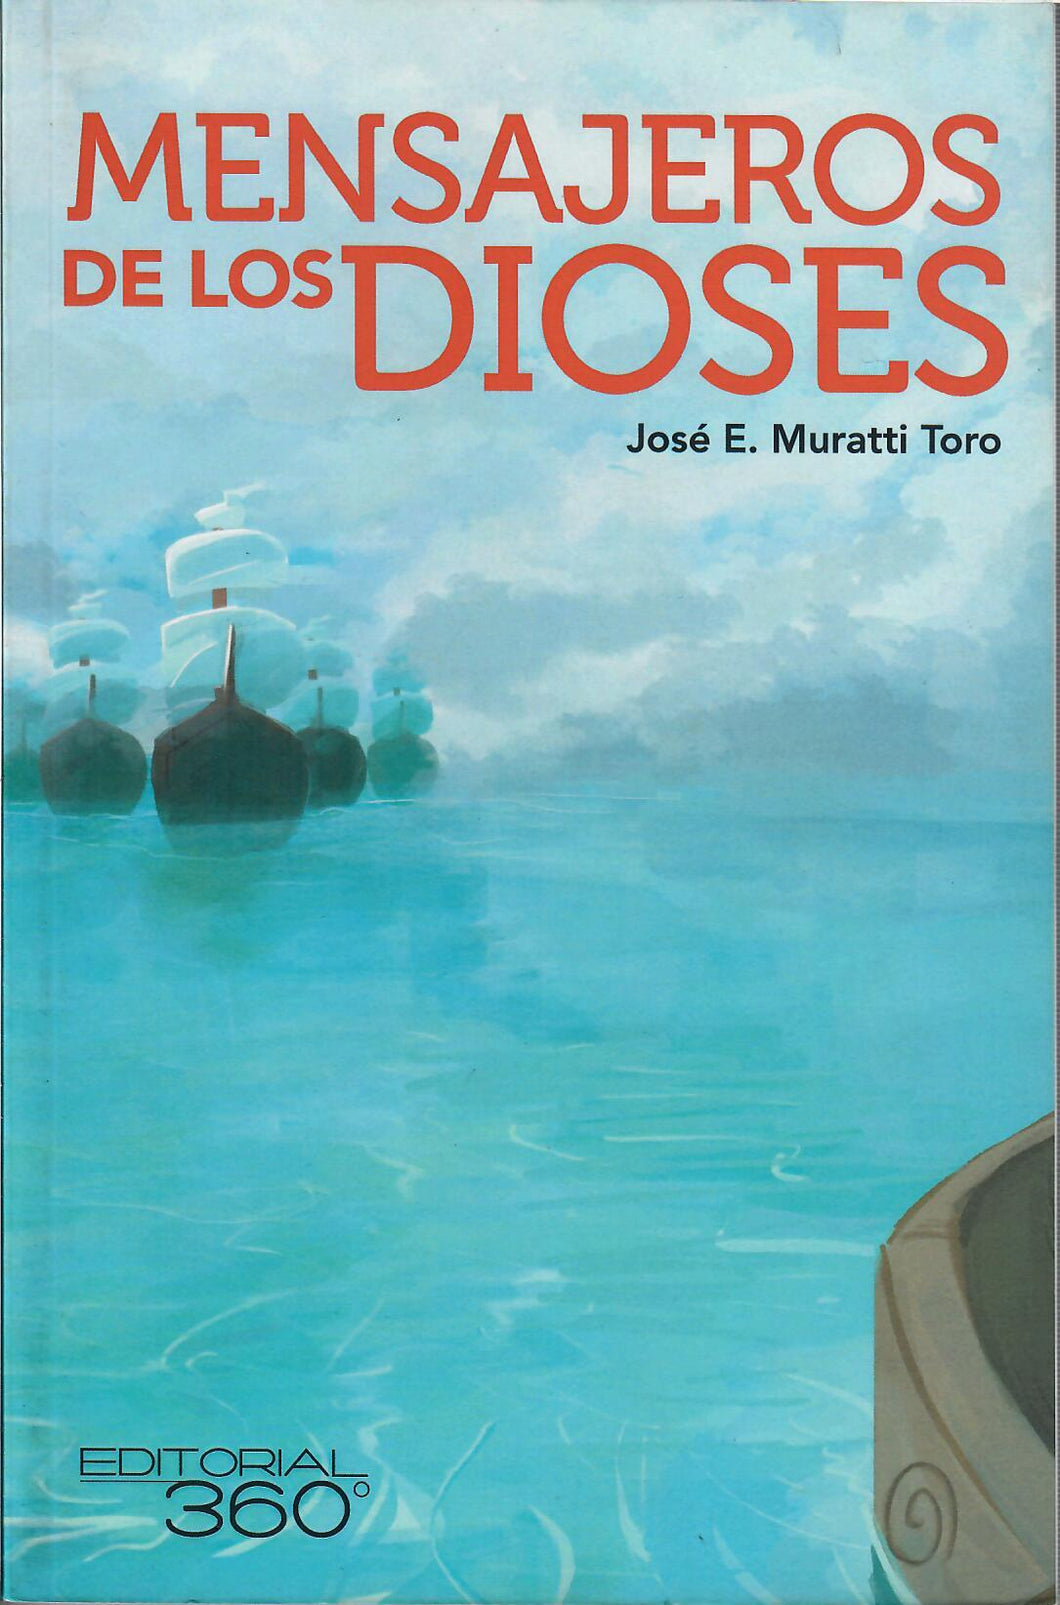 MENSAJEROS DE LOS DIOSES - José E. Muratti Toro